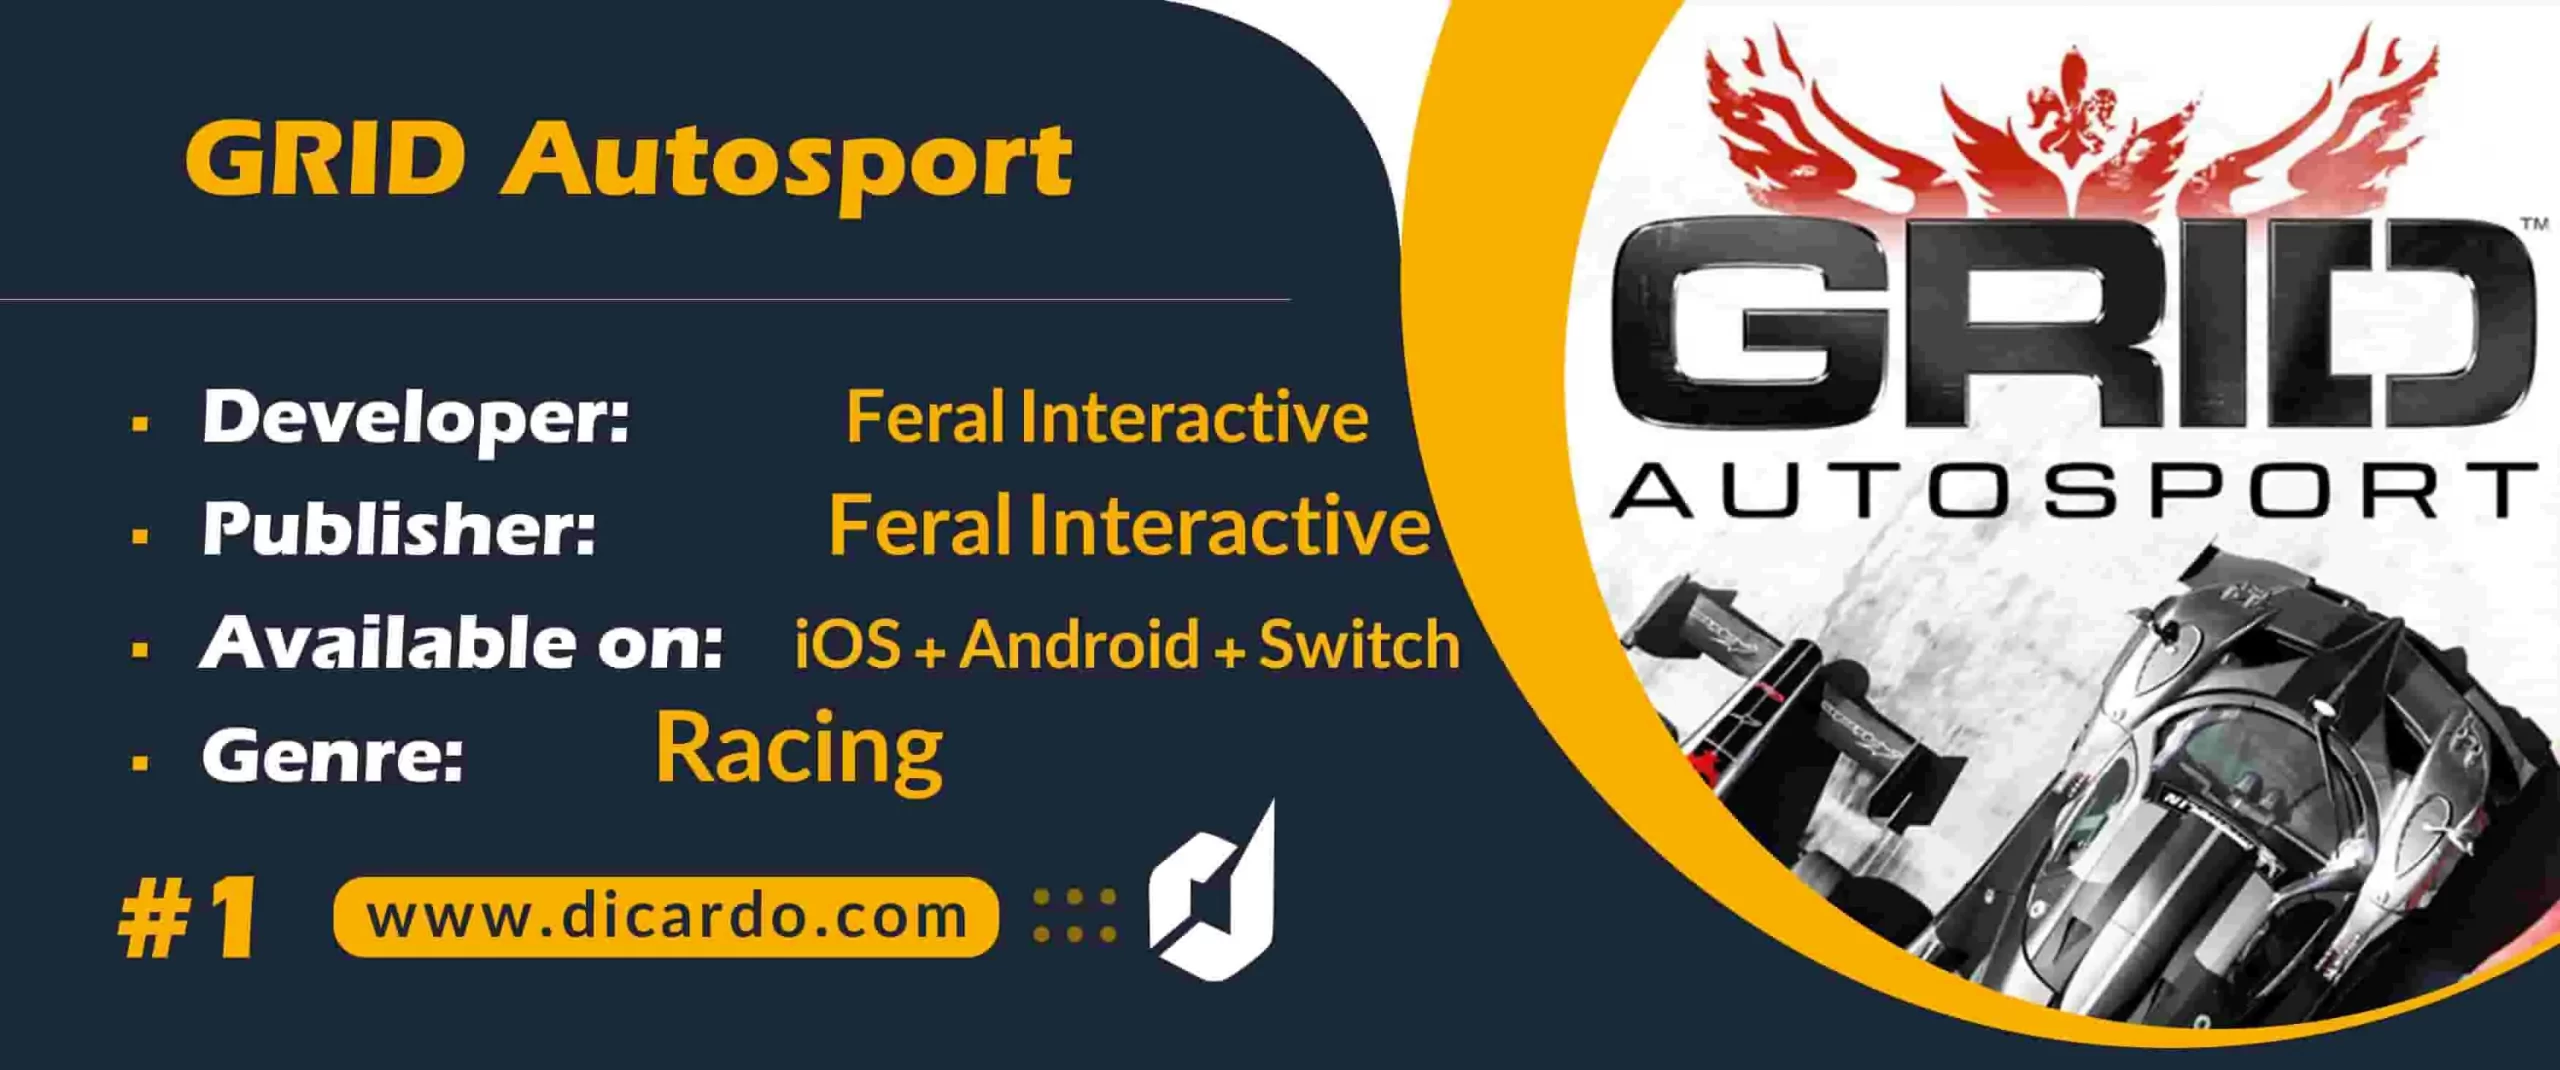 #1 گرید اتواسپورت GRID Autosport اولین مورد از بهترین بازیها برای iOS